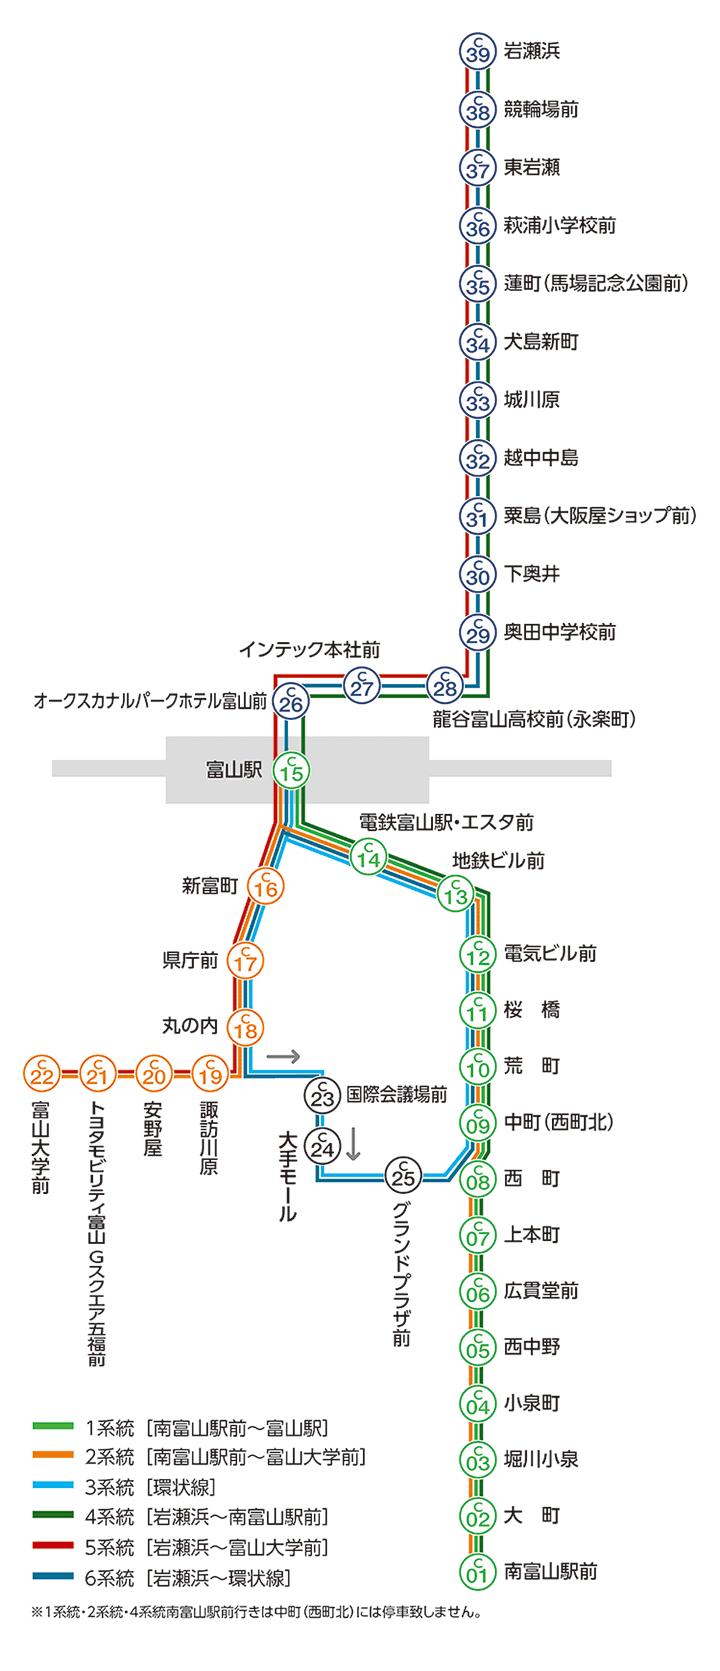 市電 路線 図 京都 京都市電路線図